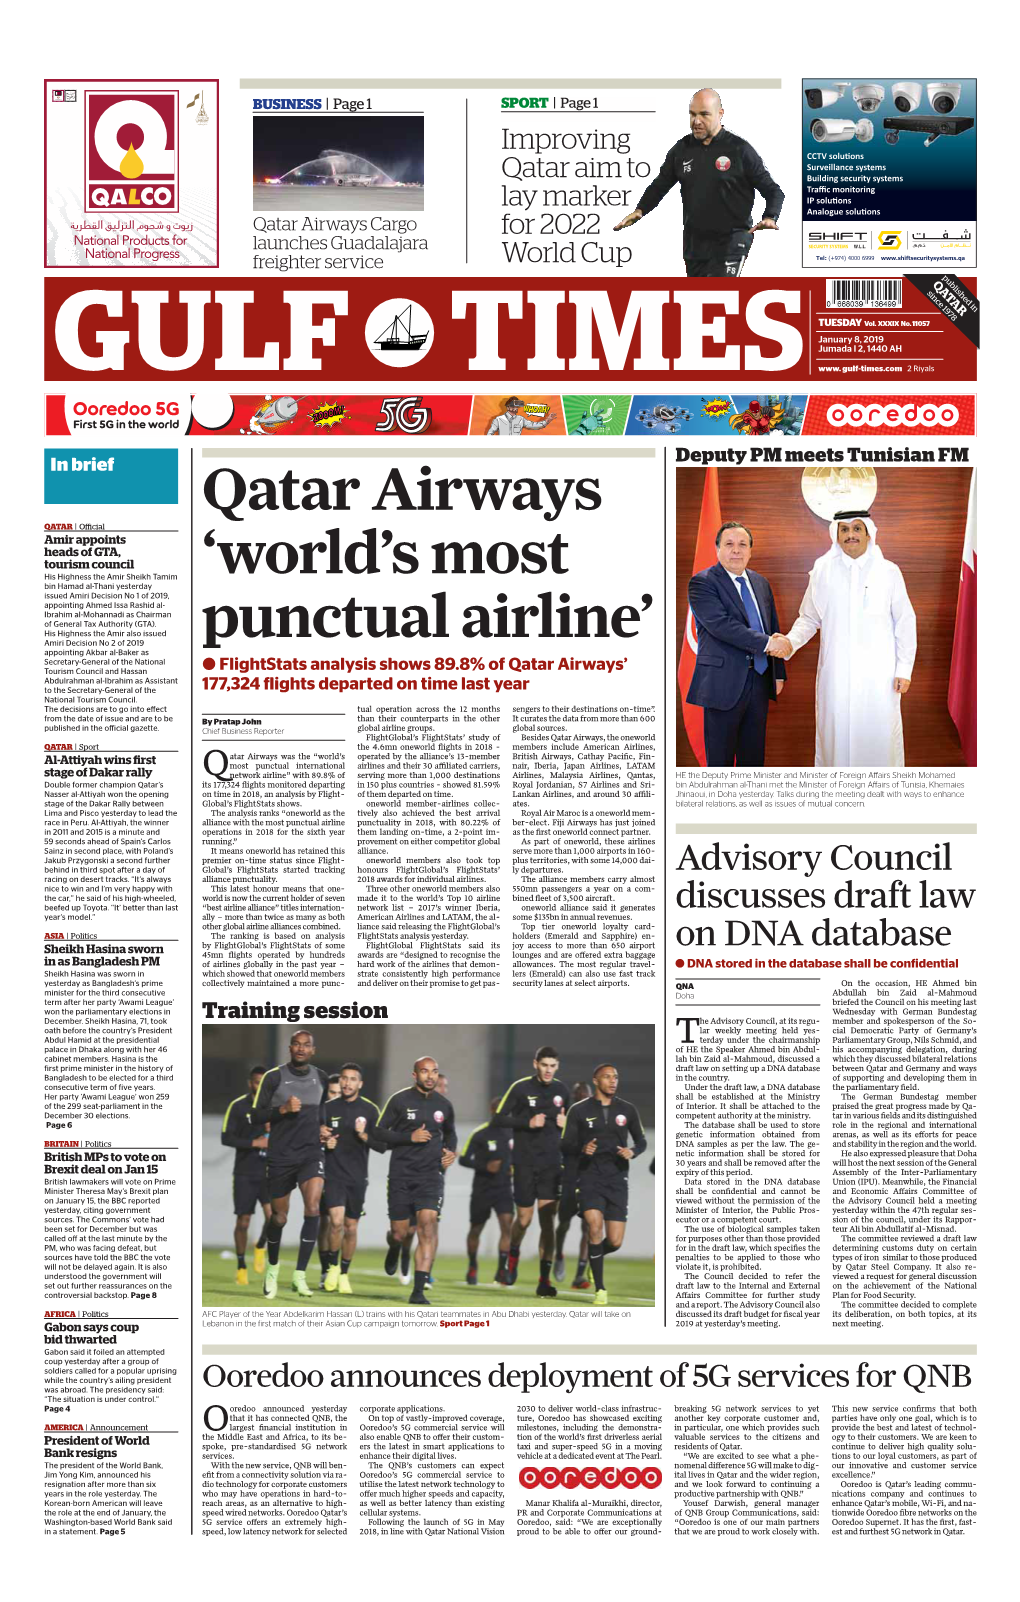 Qatar Airways 'World's Most Punctual Airline'